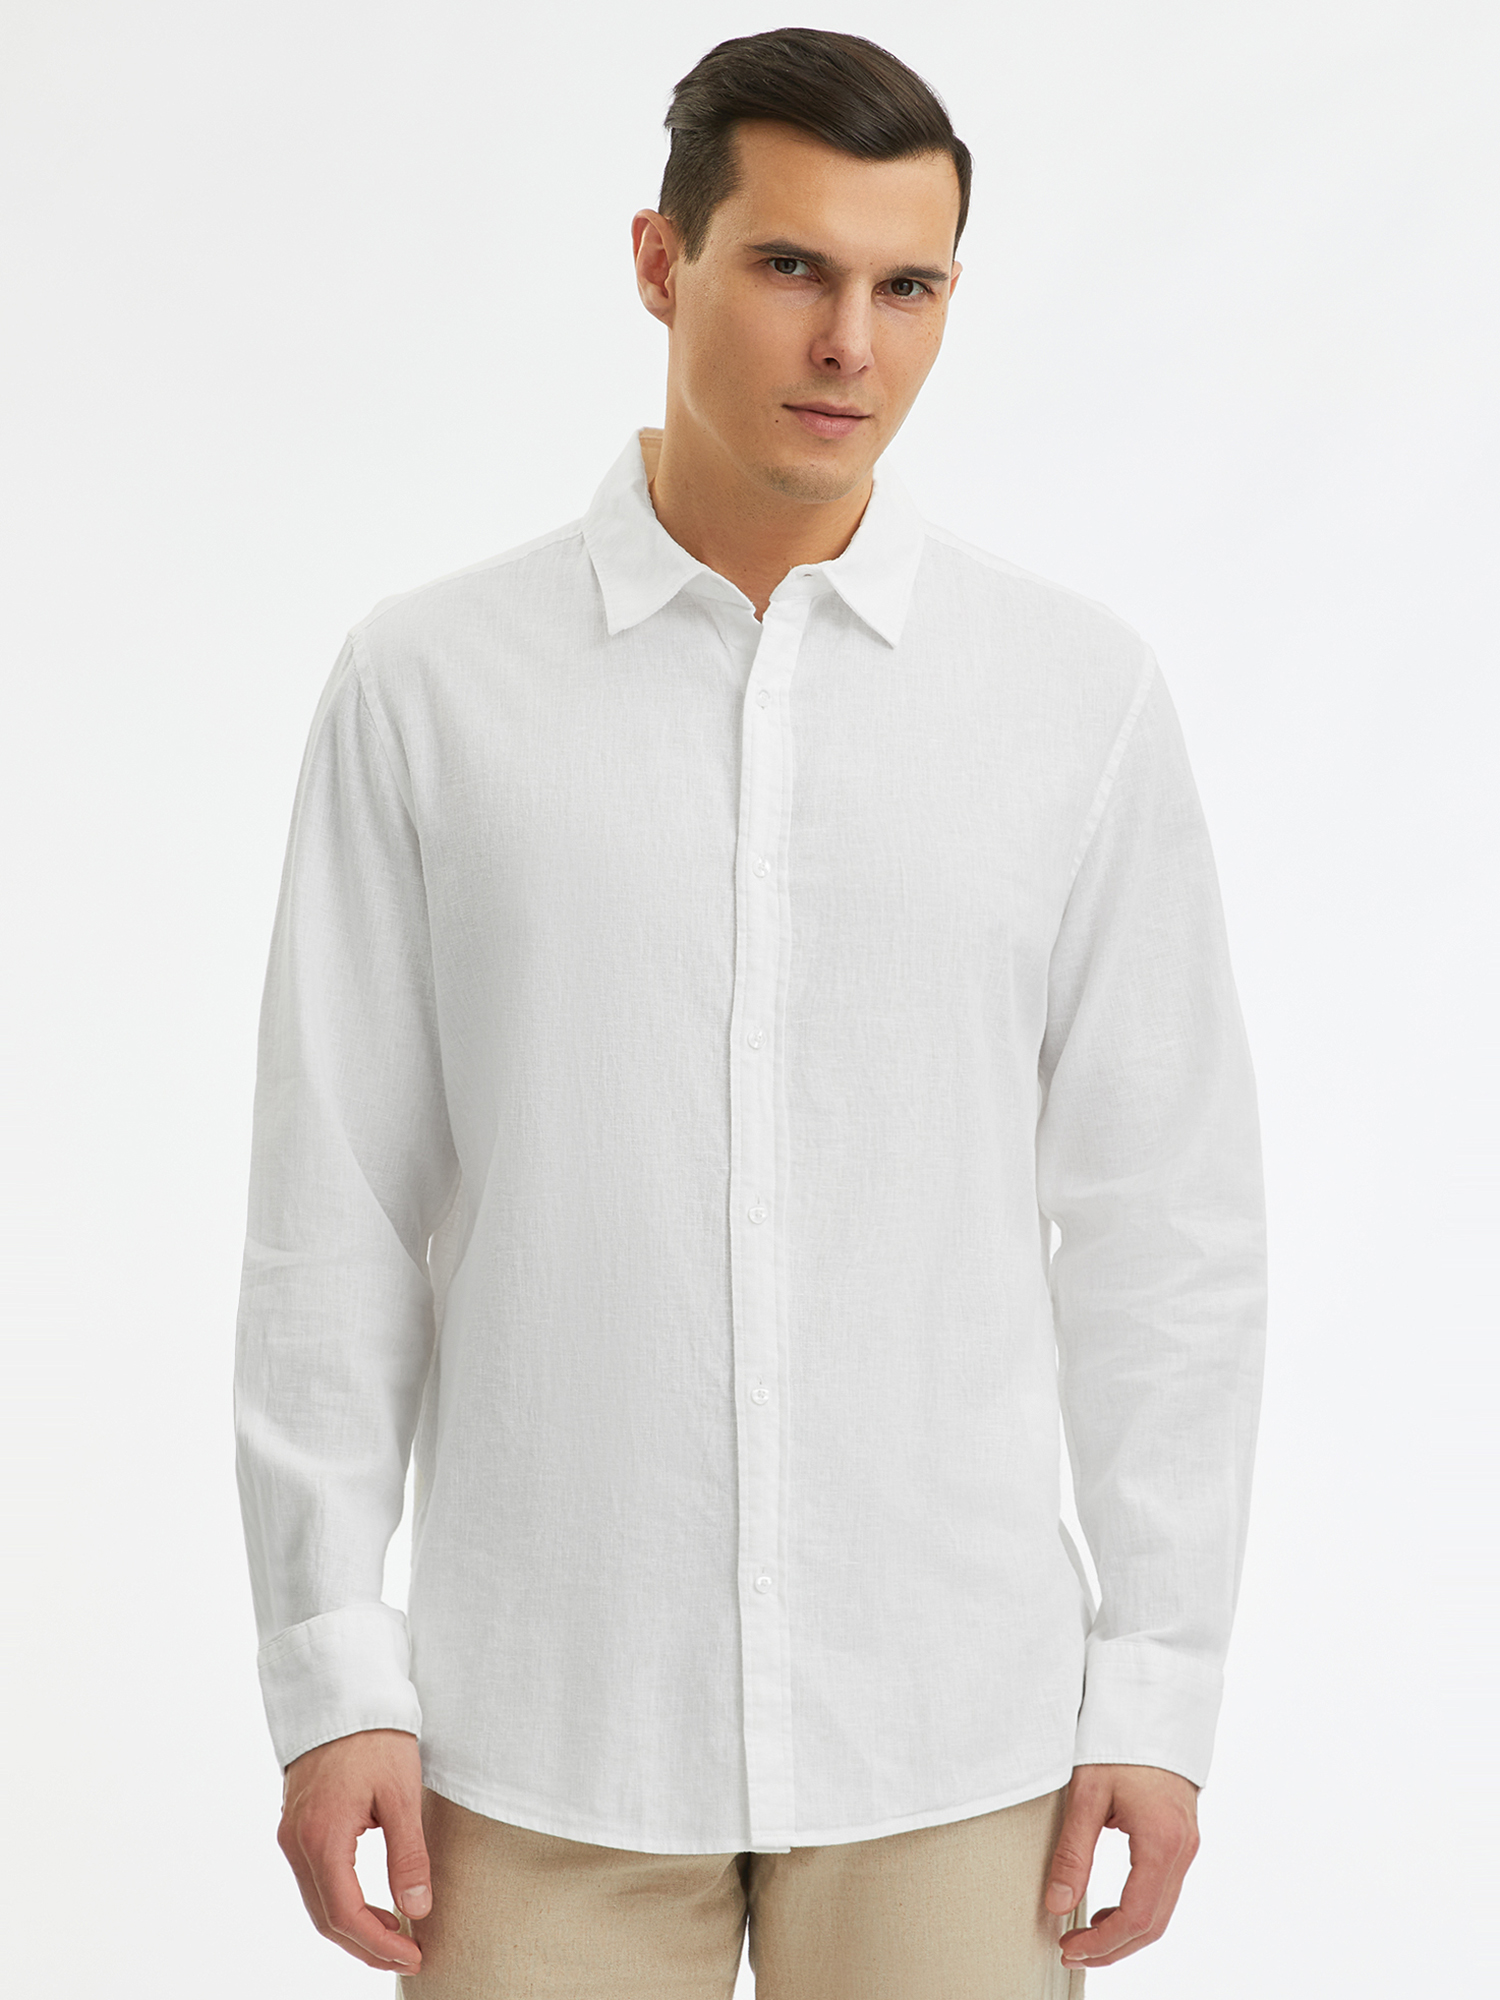 Рубашка мужская oodji 3L330009M-2 белая XXL